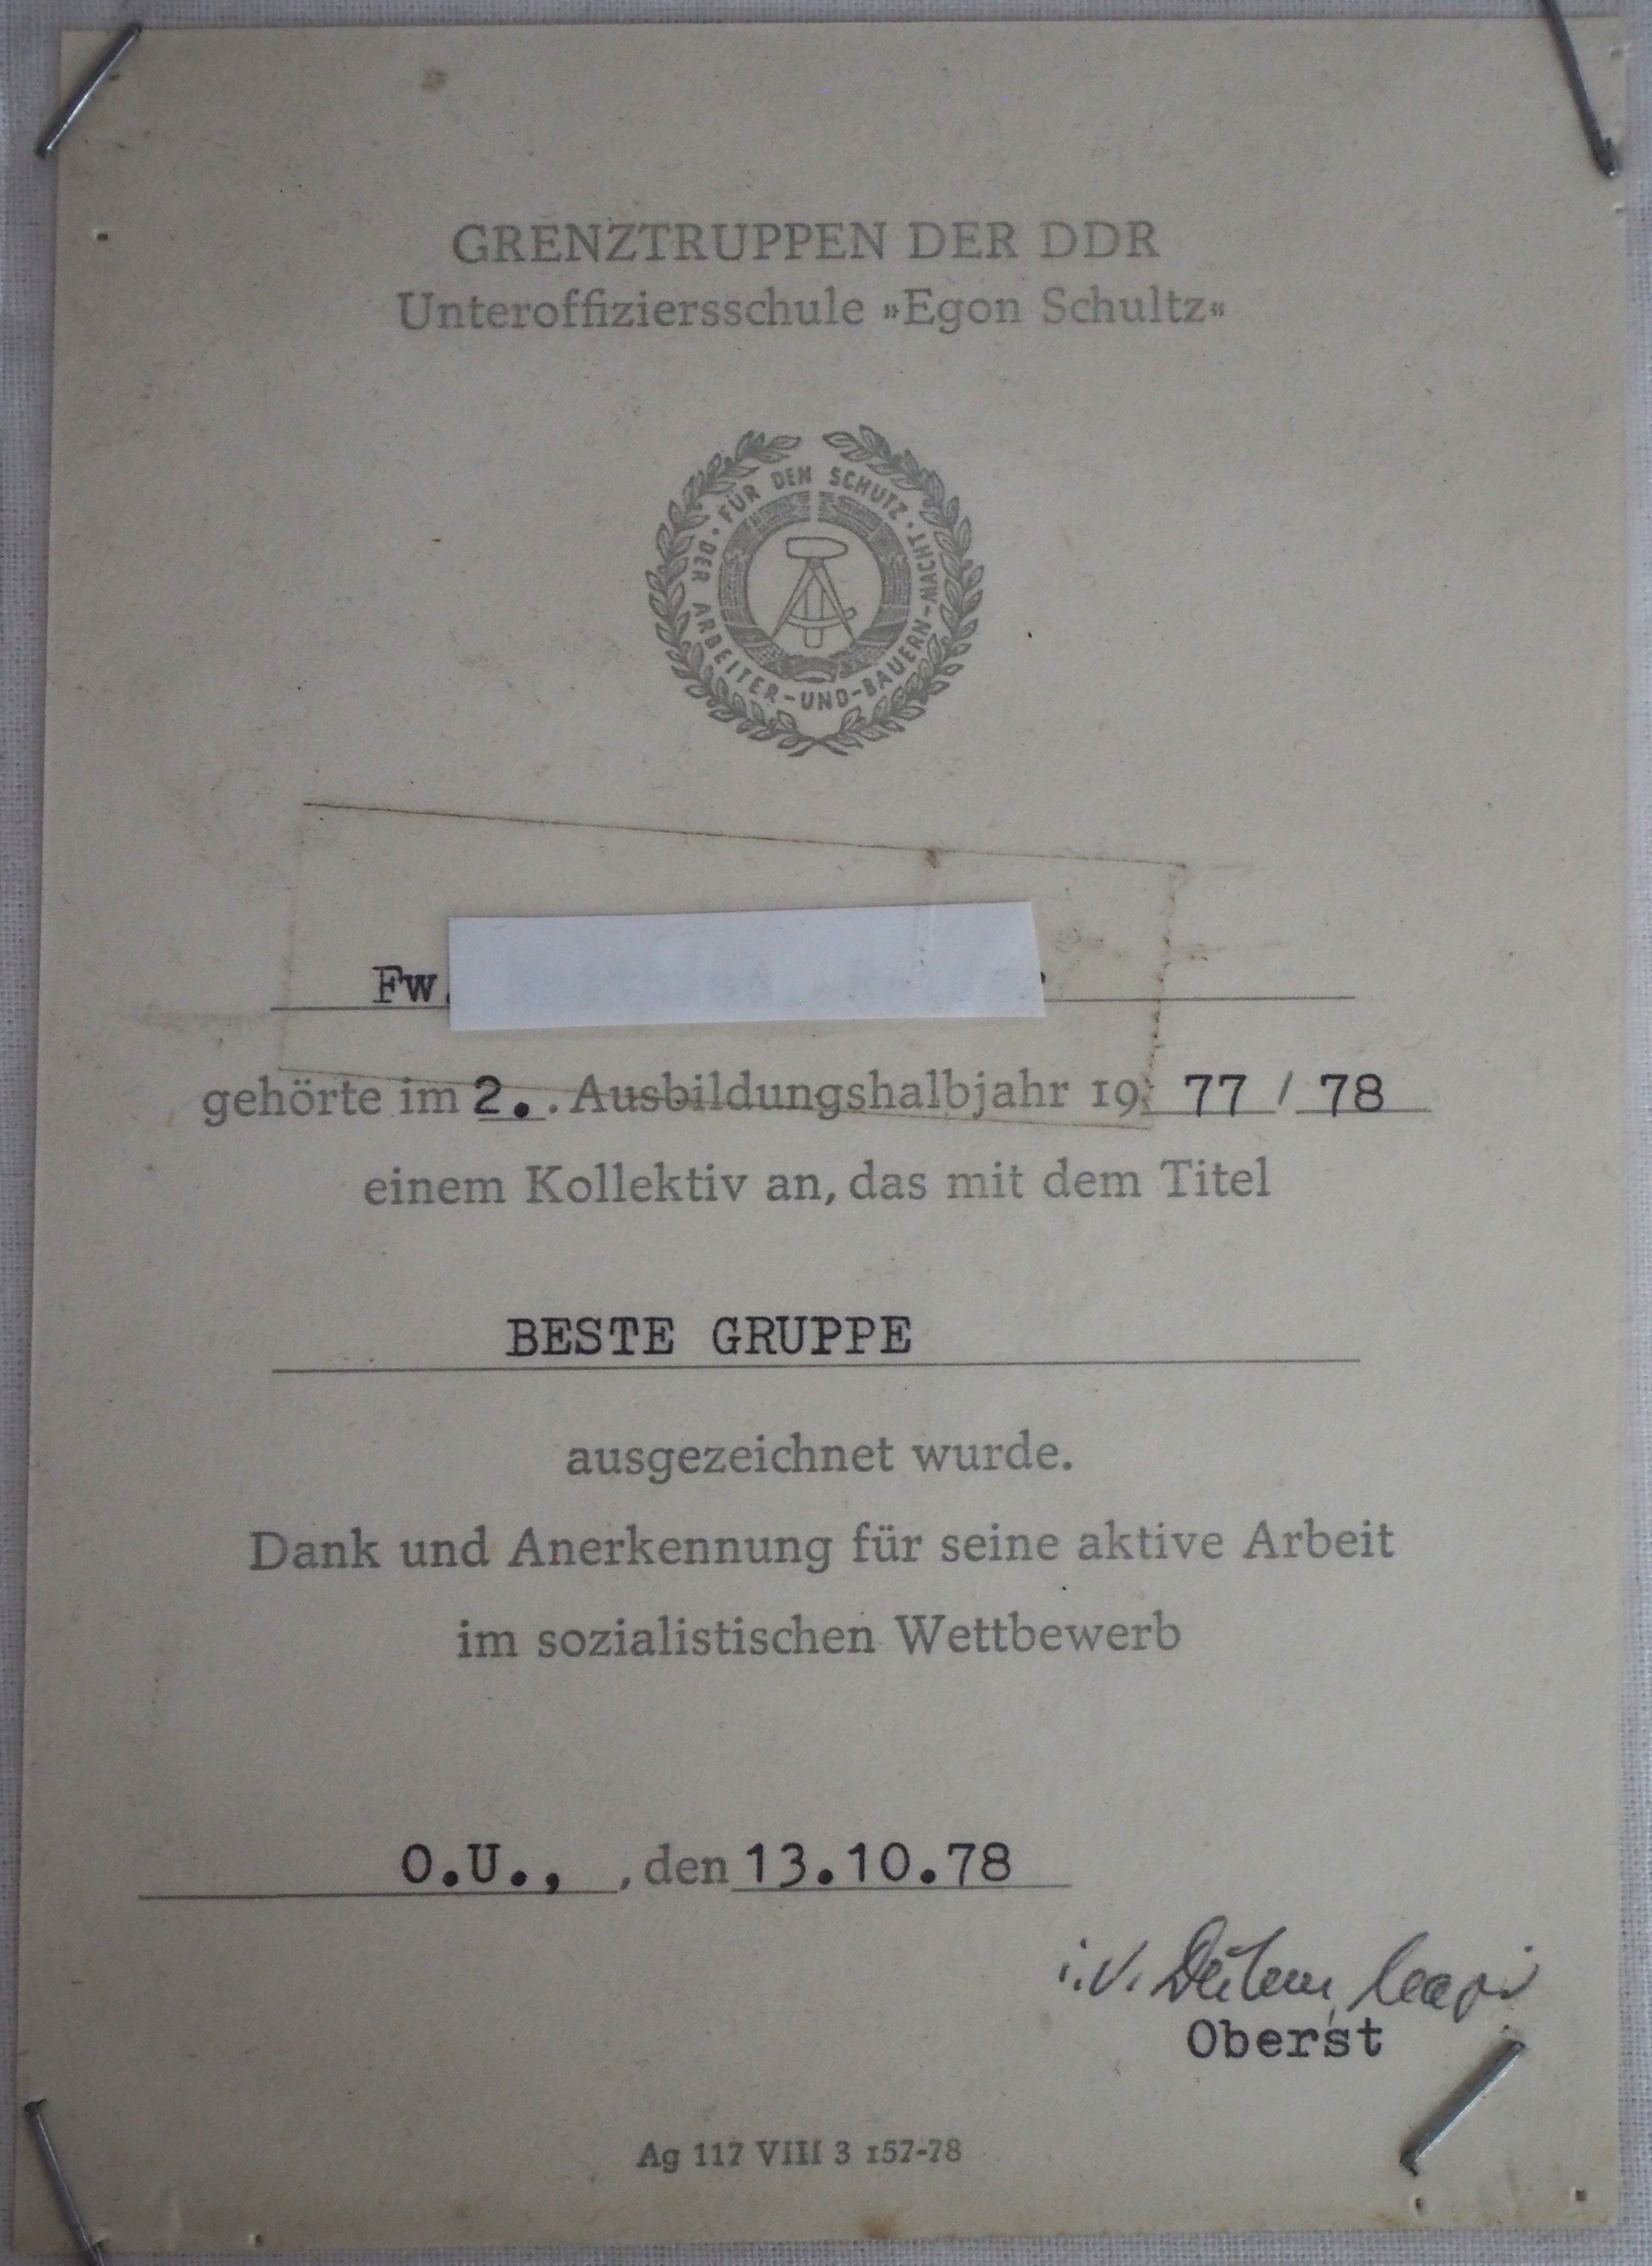 Urkunde: Auszeichnung für "Beste Gruppe" in der Unteroffiziersschule "Egon Schultz" (DDR Geschichtsmuseum im Dokumentationszentrum Perleberg CC BY-SA)